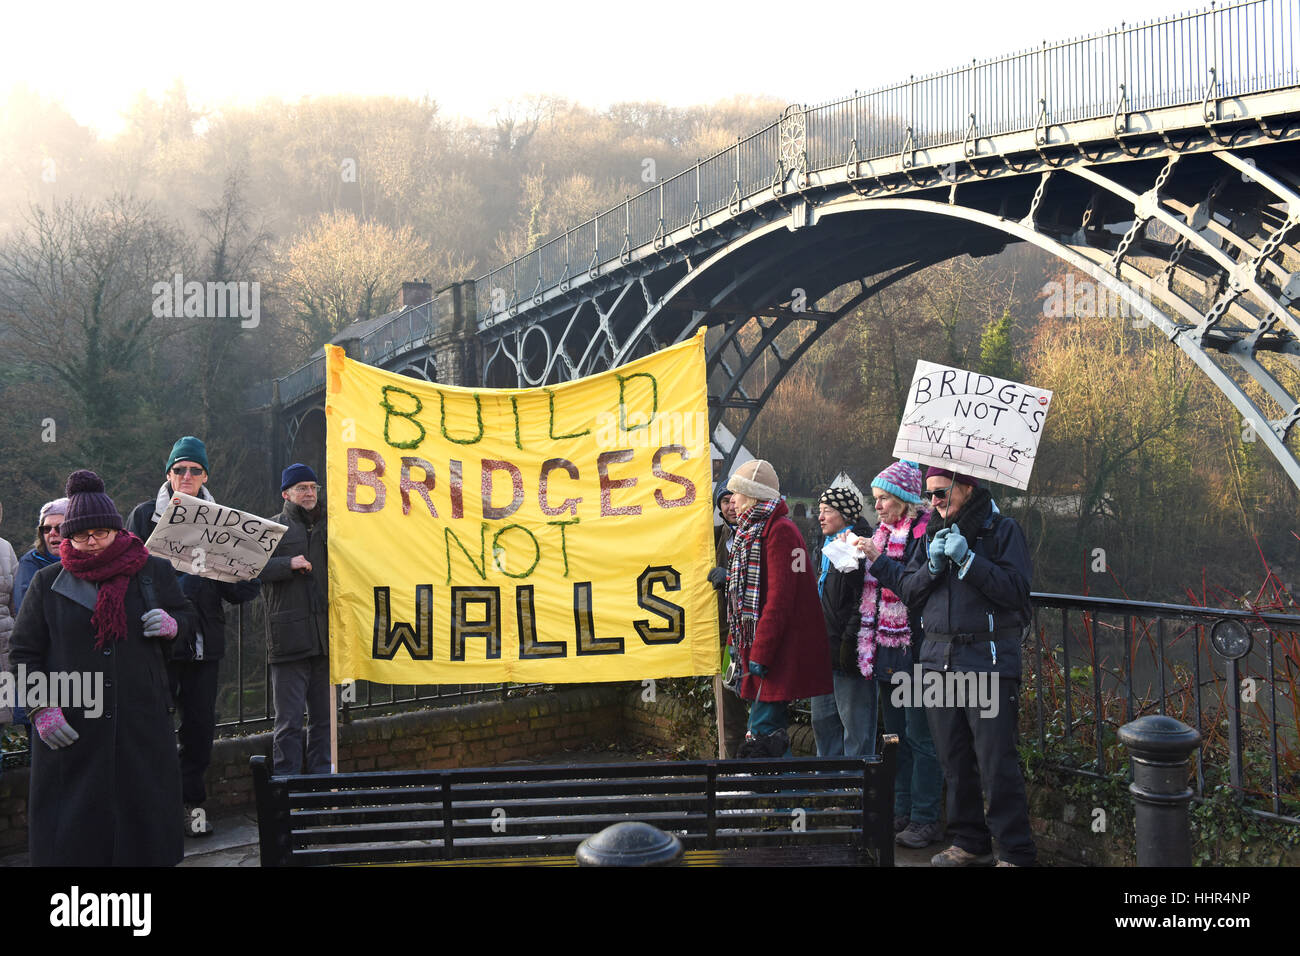 Construire des ponts et non des murs les militants qui font campagne contre la politique de Donald Trump à côté du plus vieux Ironbridge au monde. Crédit : David Bagnall Banque D'Images